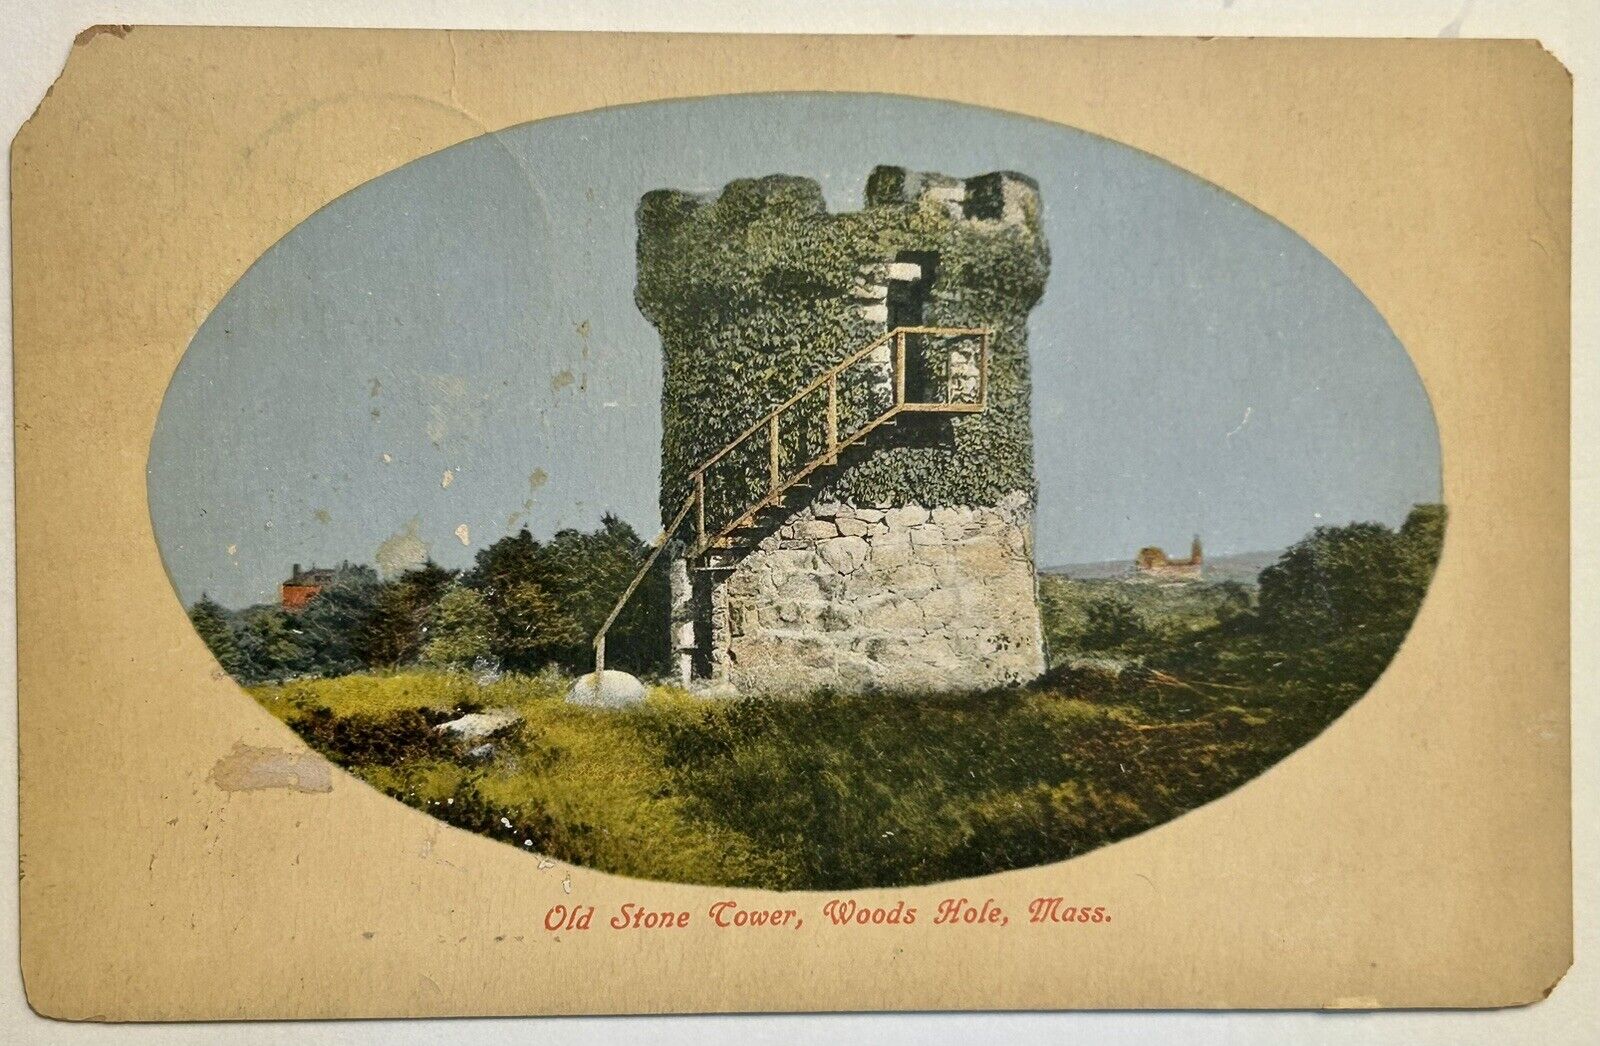 Old Stone Tower, Woods Hole. Massachusetts 1911 Vintage Postcard